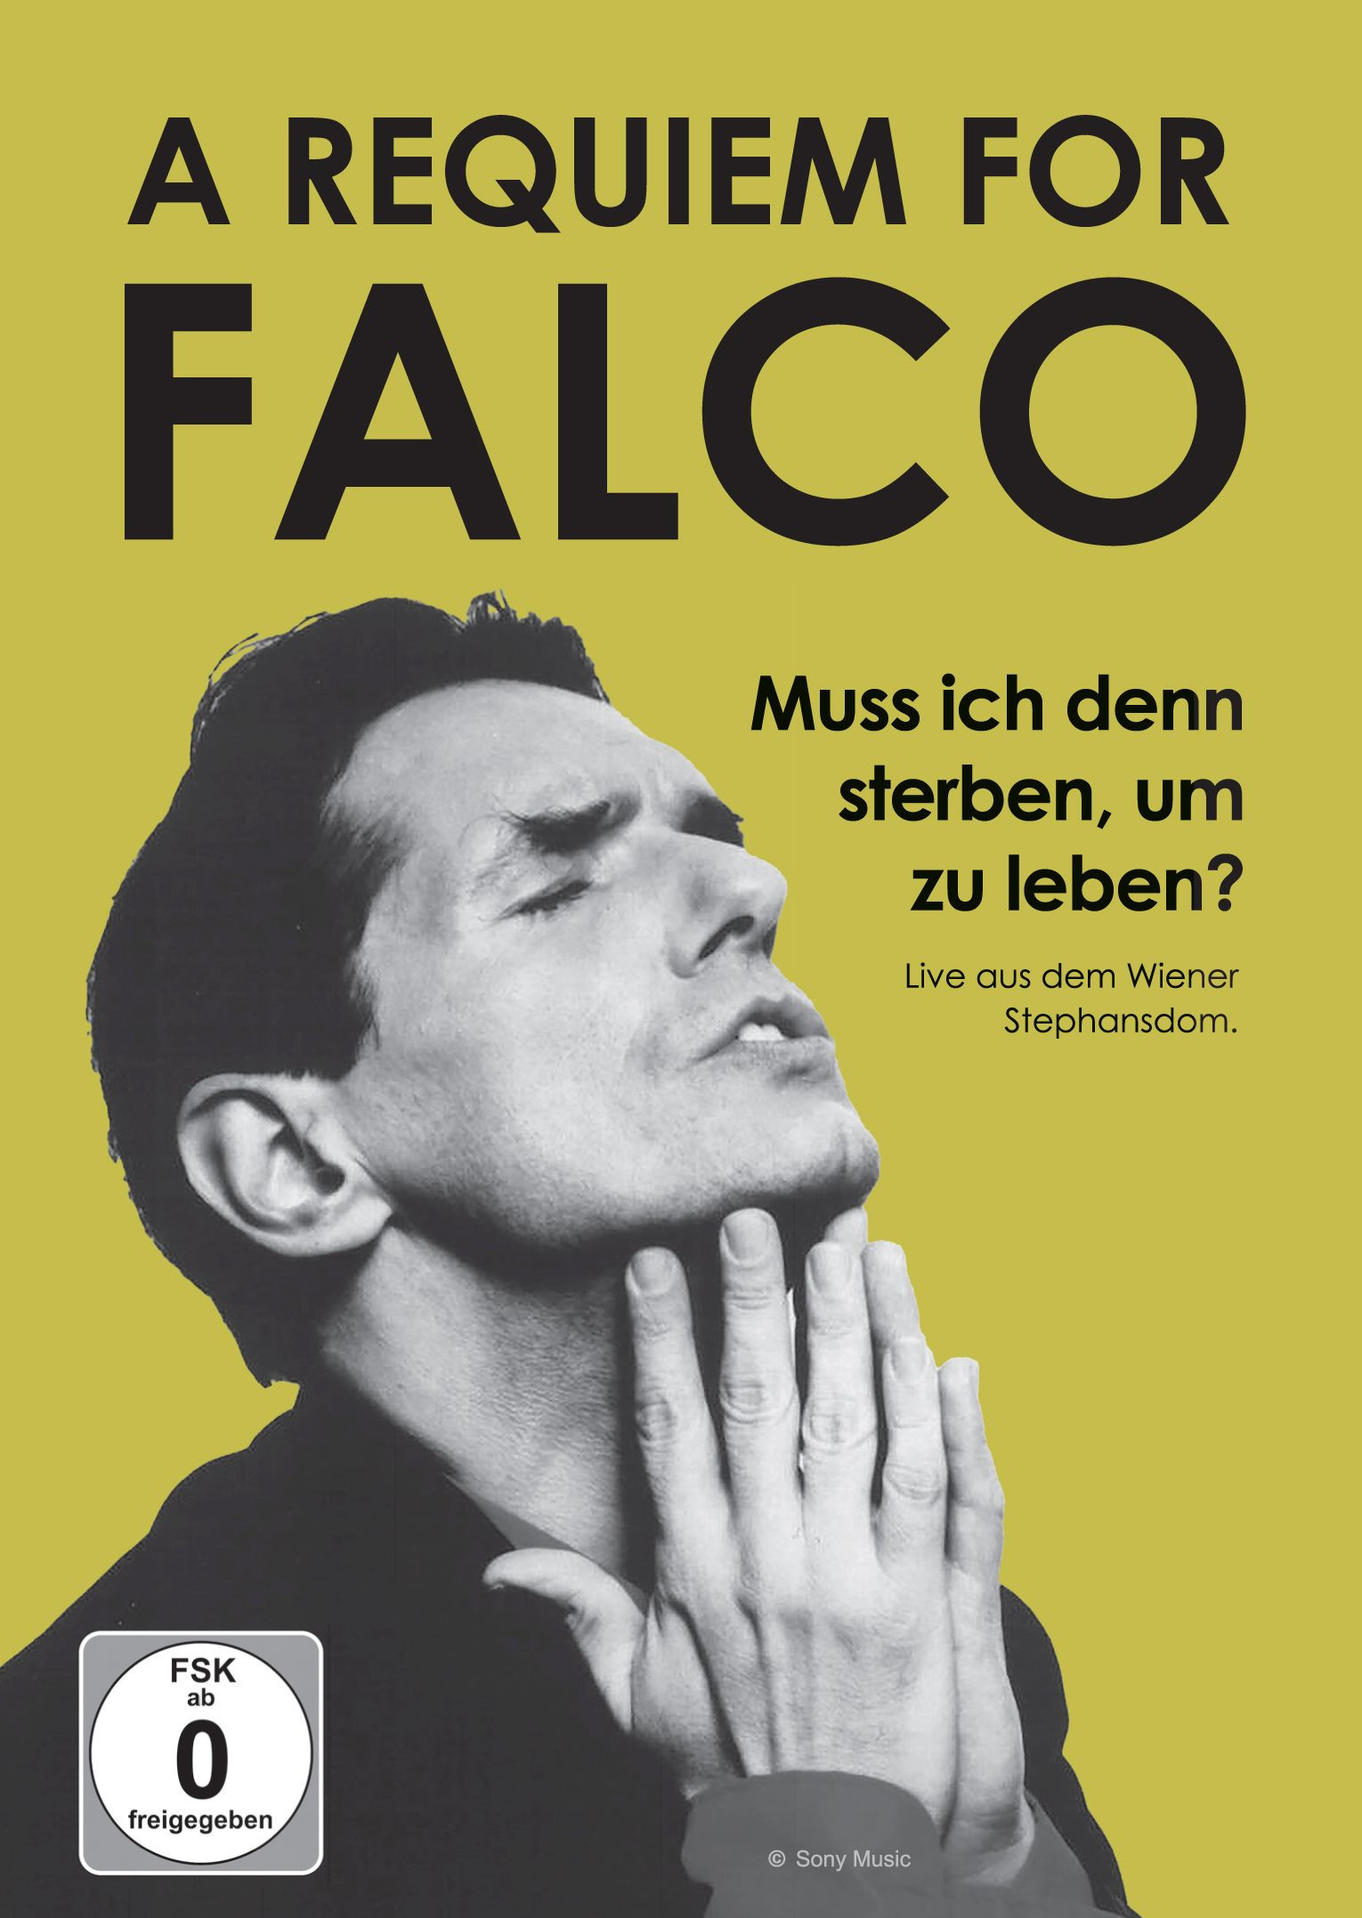 VARIOUS - A Requiem sterben, (DVD) for denn zu - um leben? Muss ich Falco